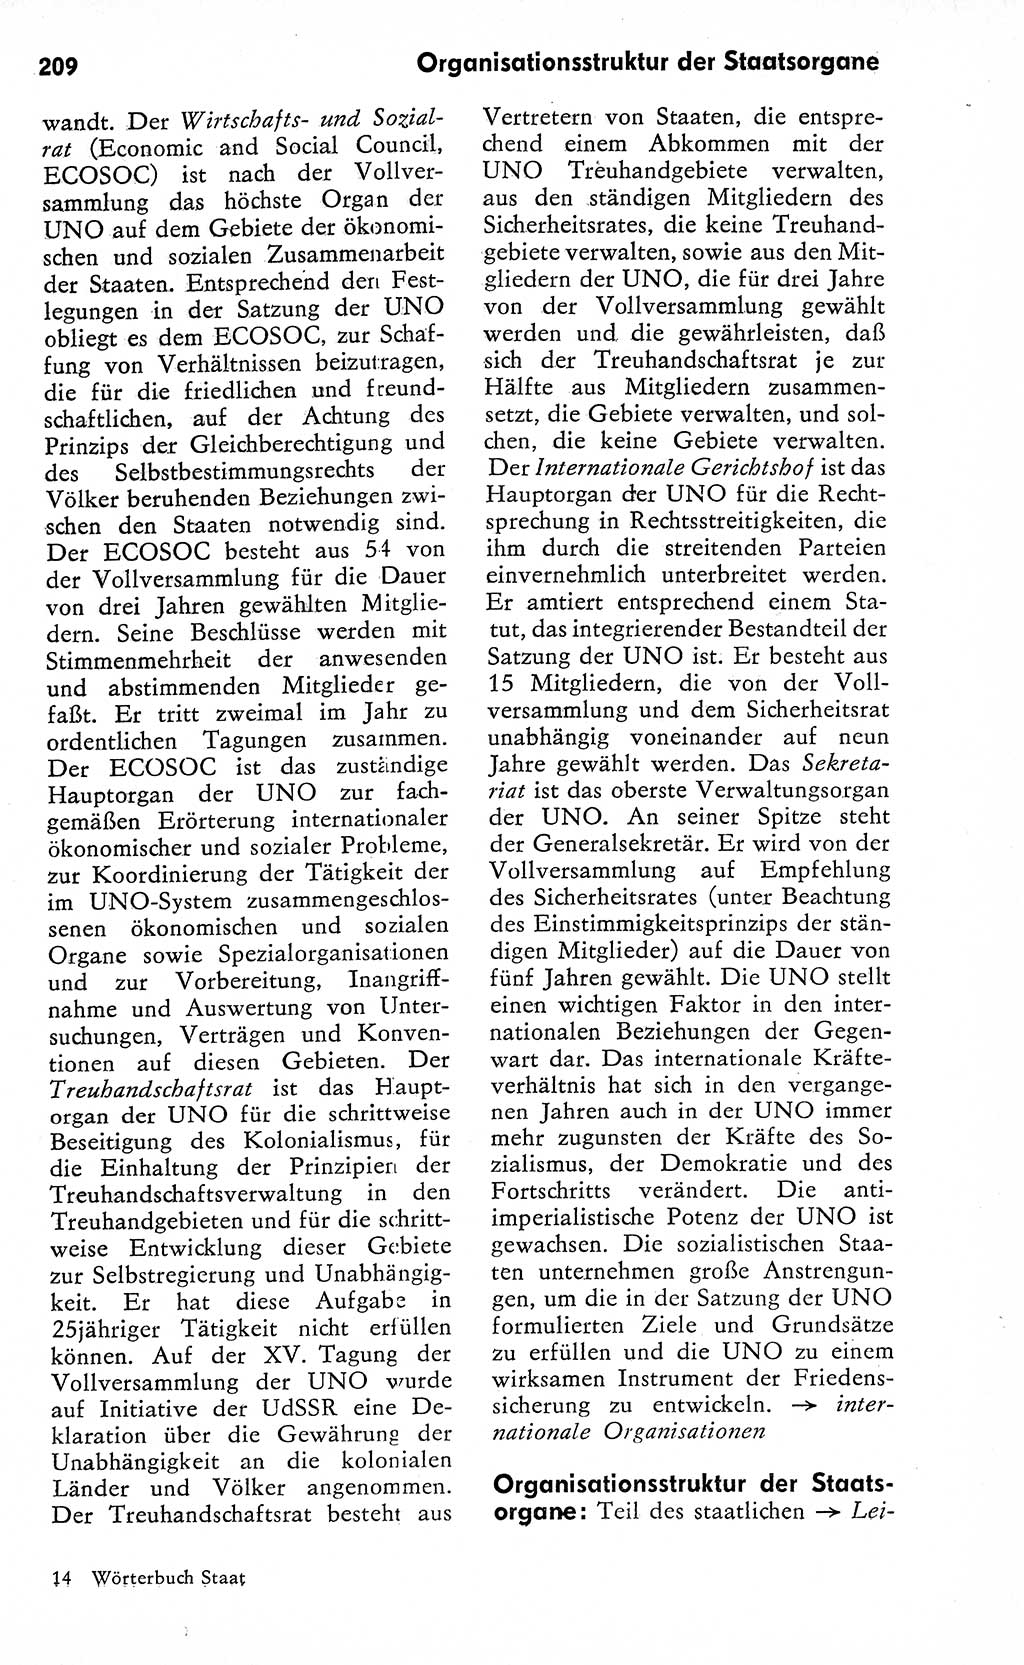 Wörterbuch zum sozialistischen Staat [Deutsche Demokratische Republik (DDR)] 1974, Seite 209 (Wb. soz. St. DDR 1974, S. 209)